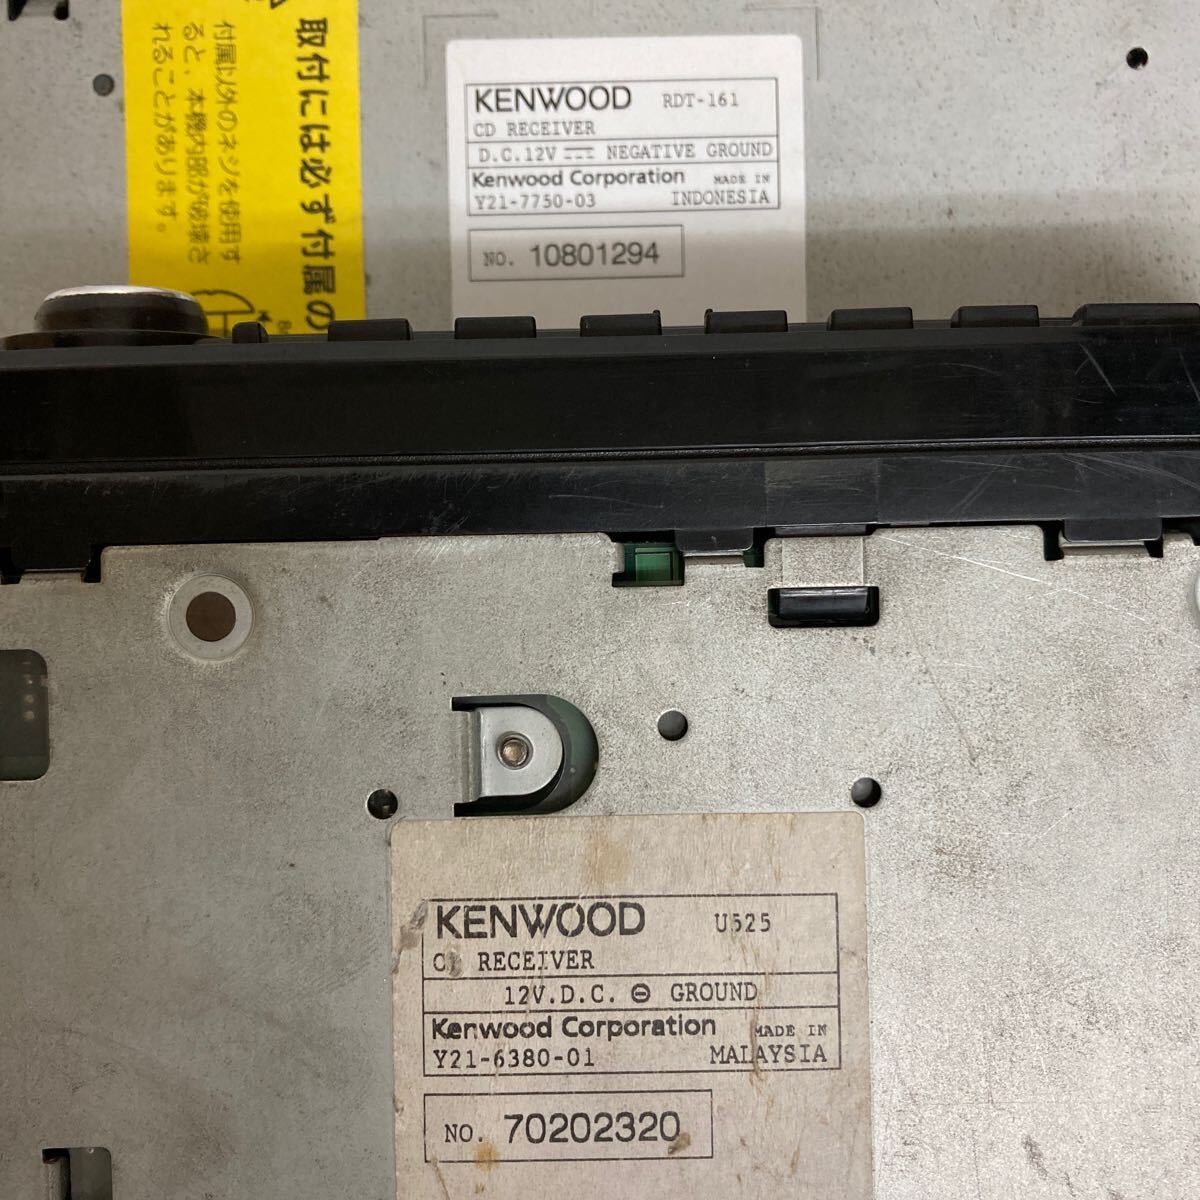 L054 машина стерео 7 шт. совместно /KENWOOD CD RECEIVER/TOYOTA / работоспособность не проверялась утиль 